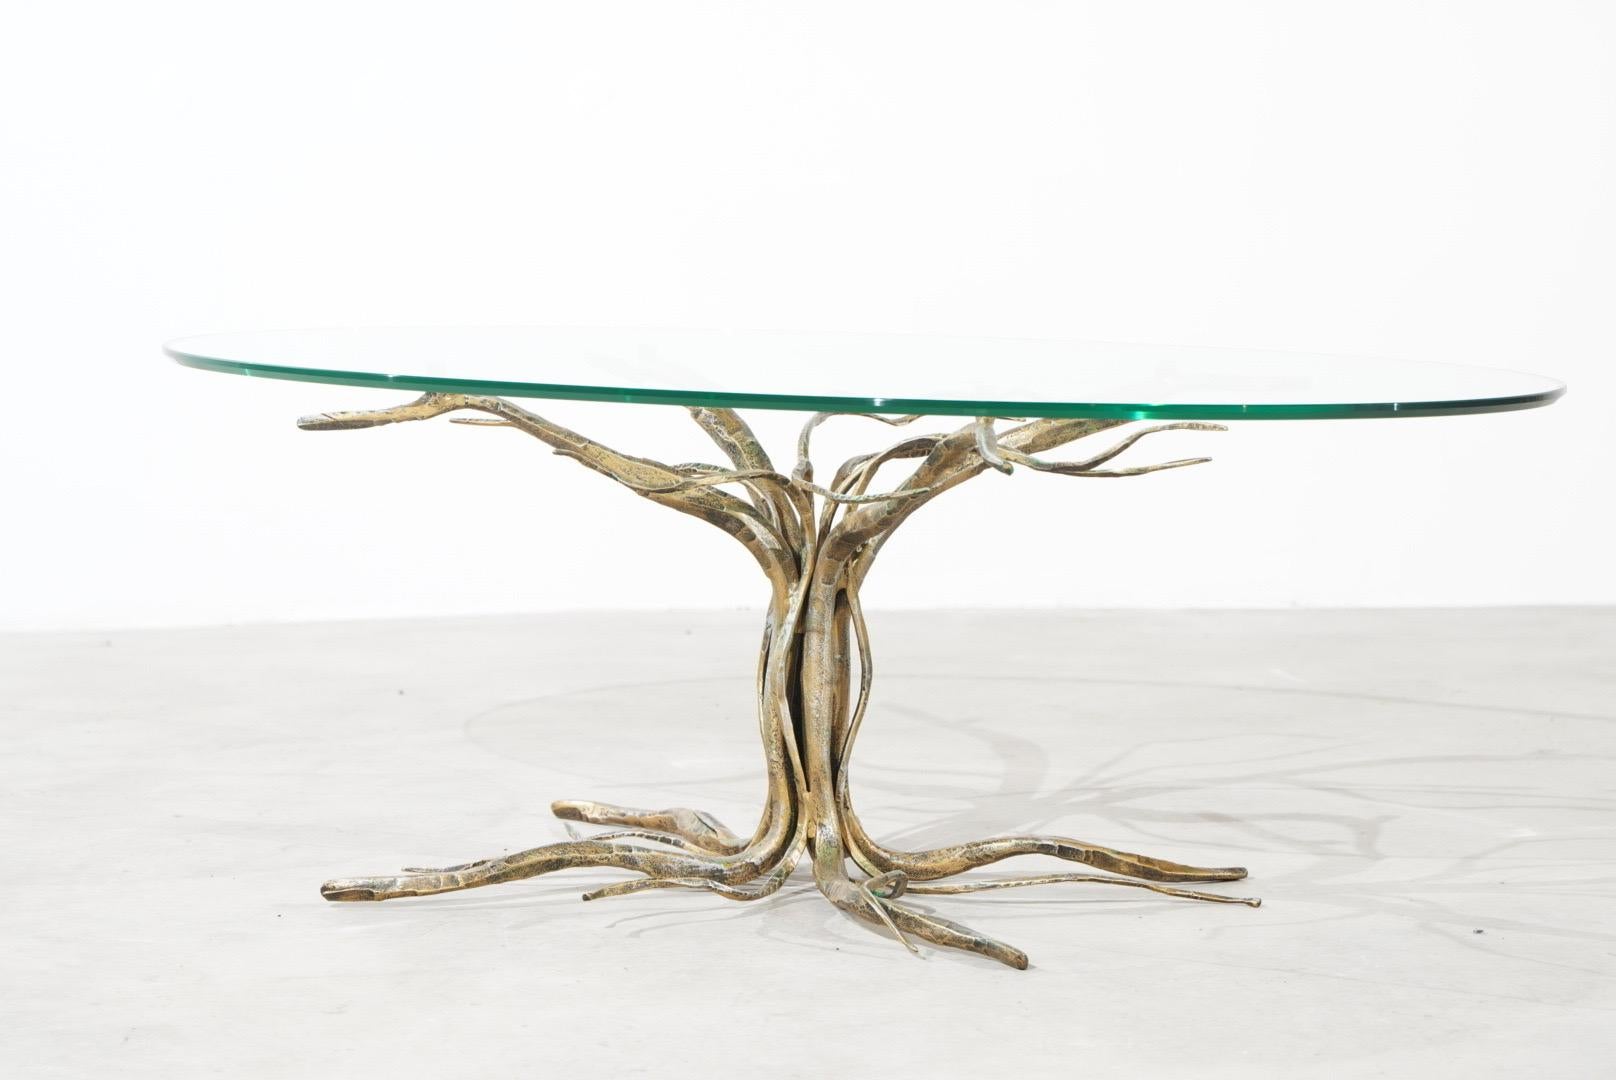 Magnifique table basse fabriquée à la main par l'artiste et sculpteur italien Salvino Marsura, décédé en mai 2020.
La table basse présente un arbre étonnant en fer forgé doré.
Le dessus est en verre de cristal d'origine avec un bord coupé.
La table